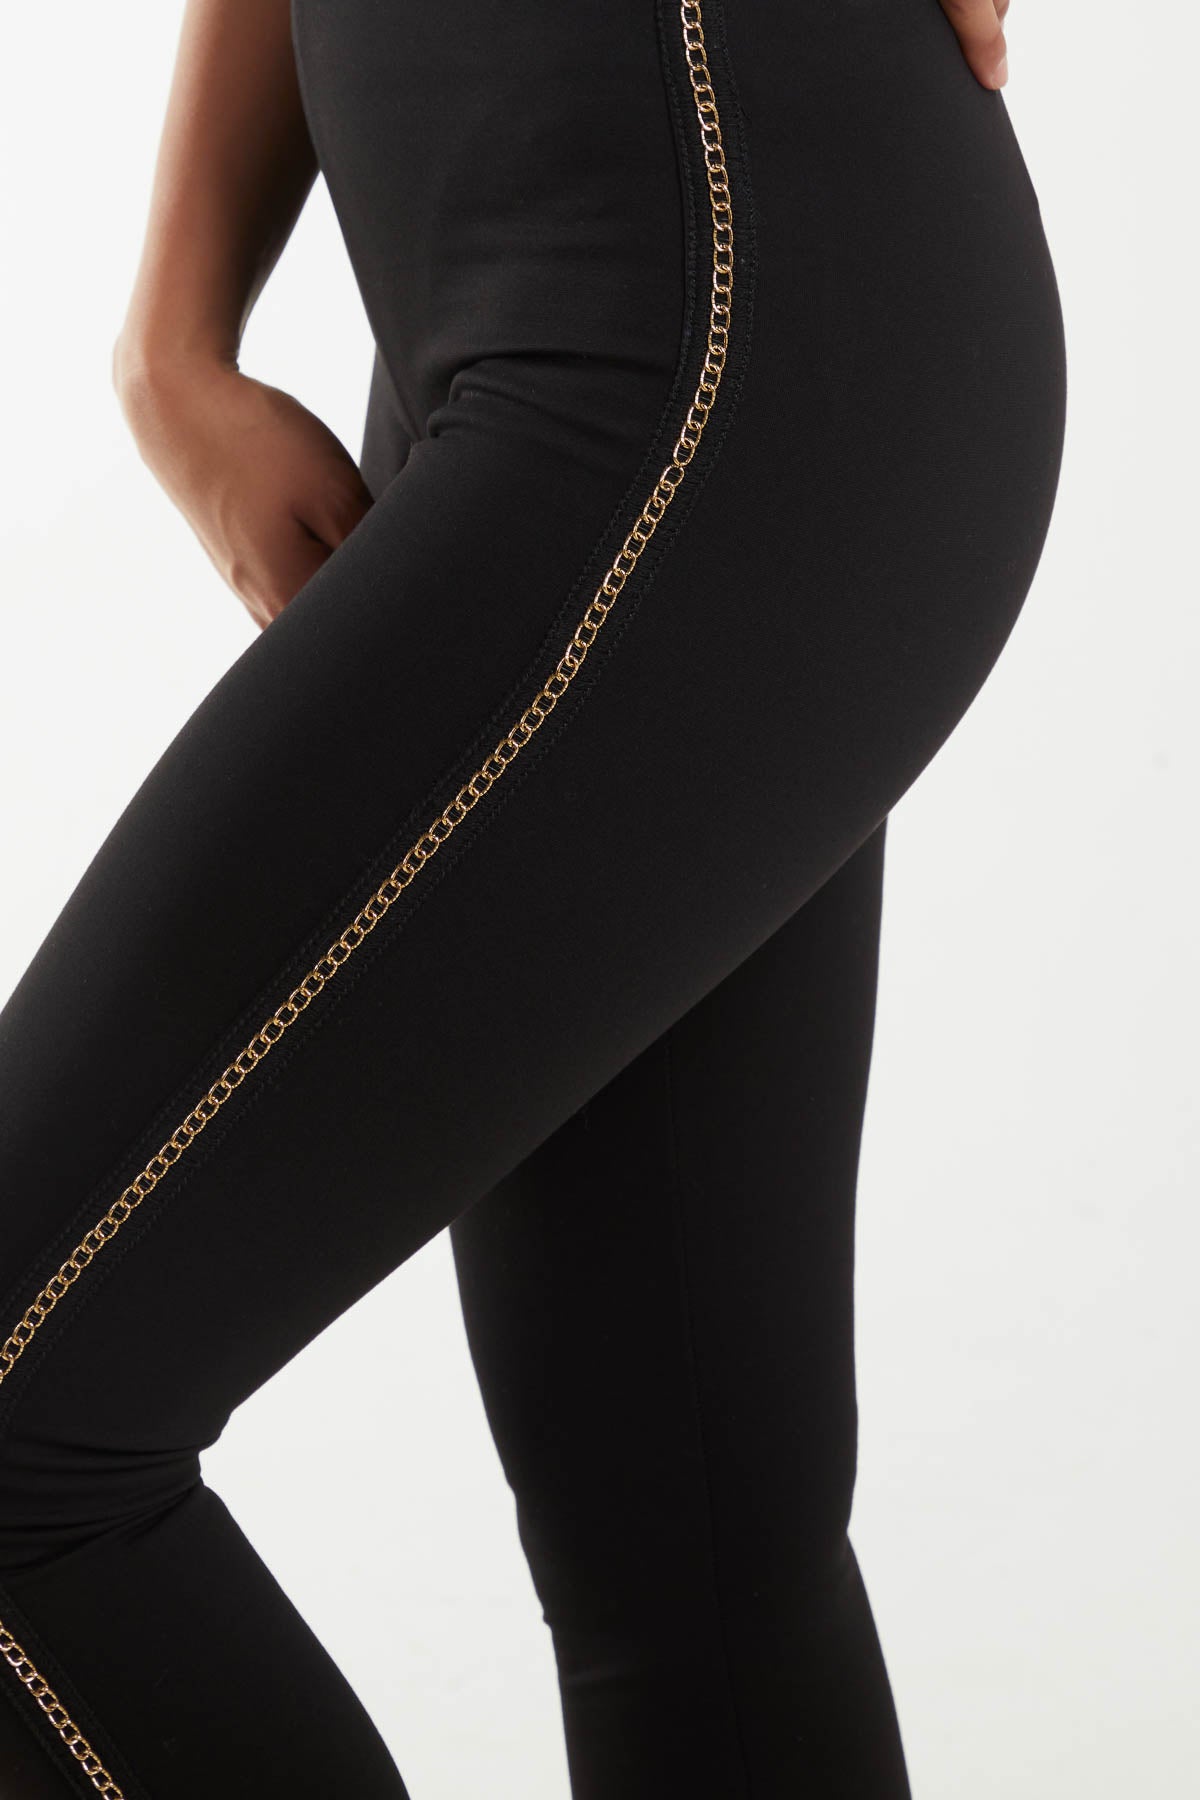 Gold Chain Side Detail Leggings